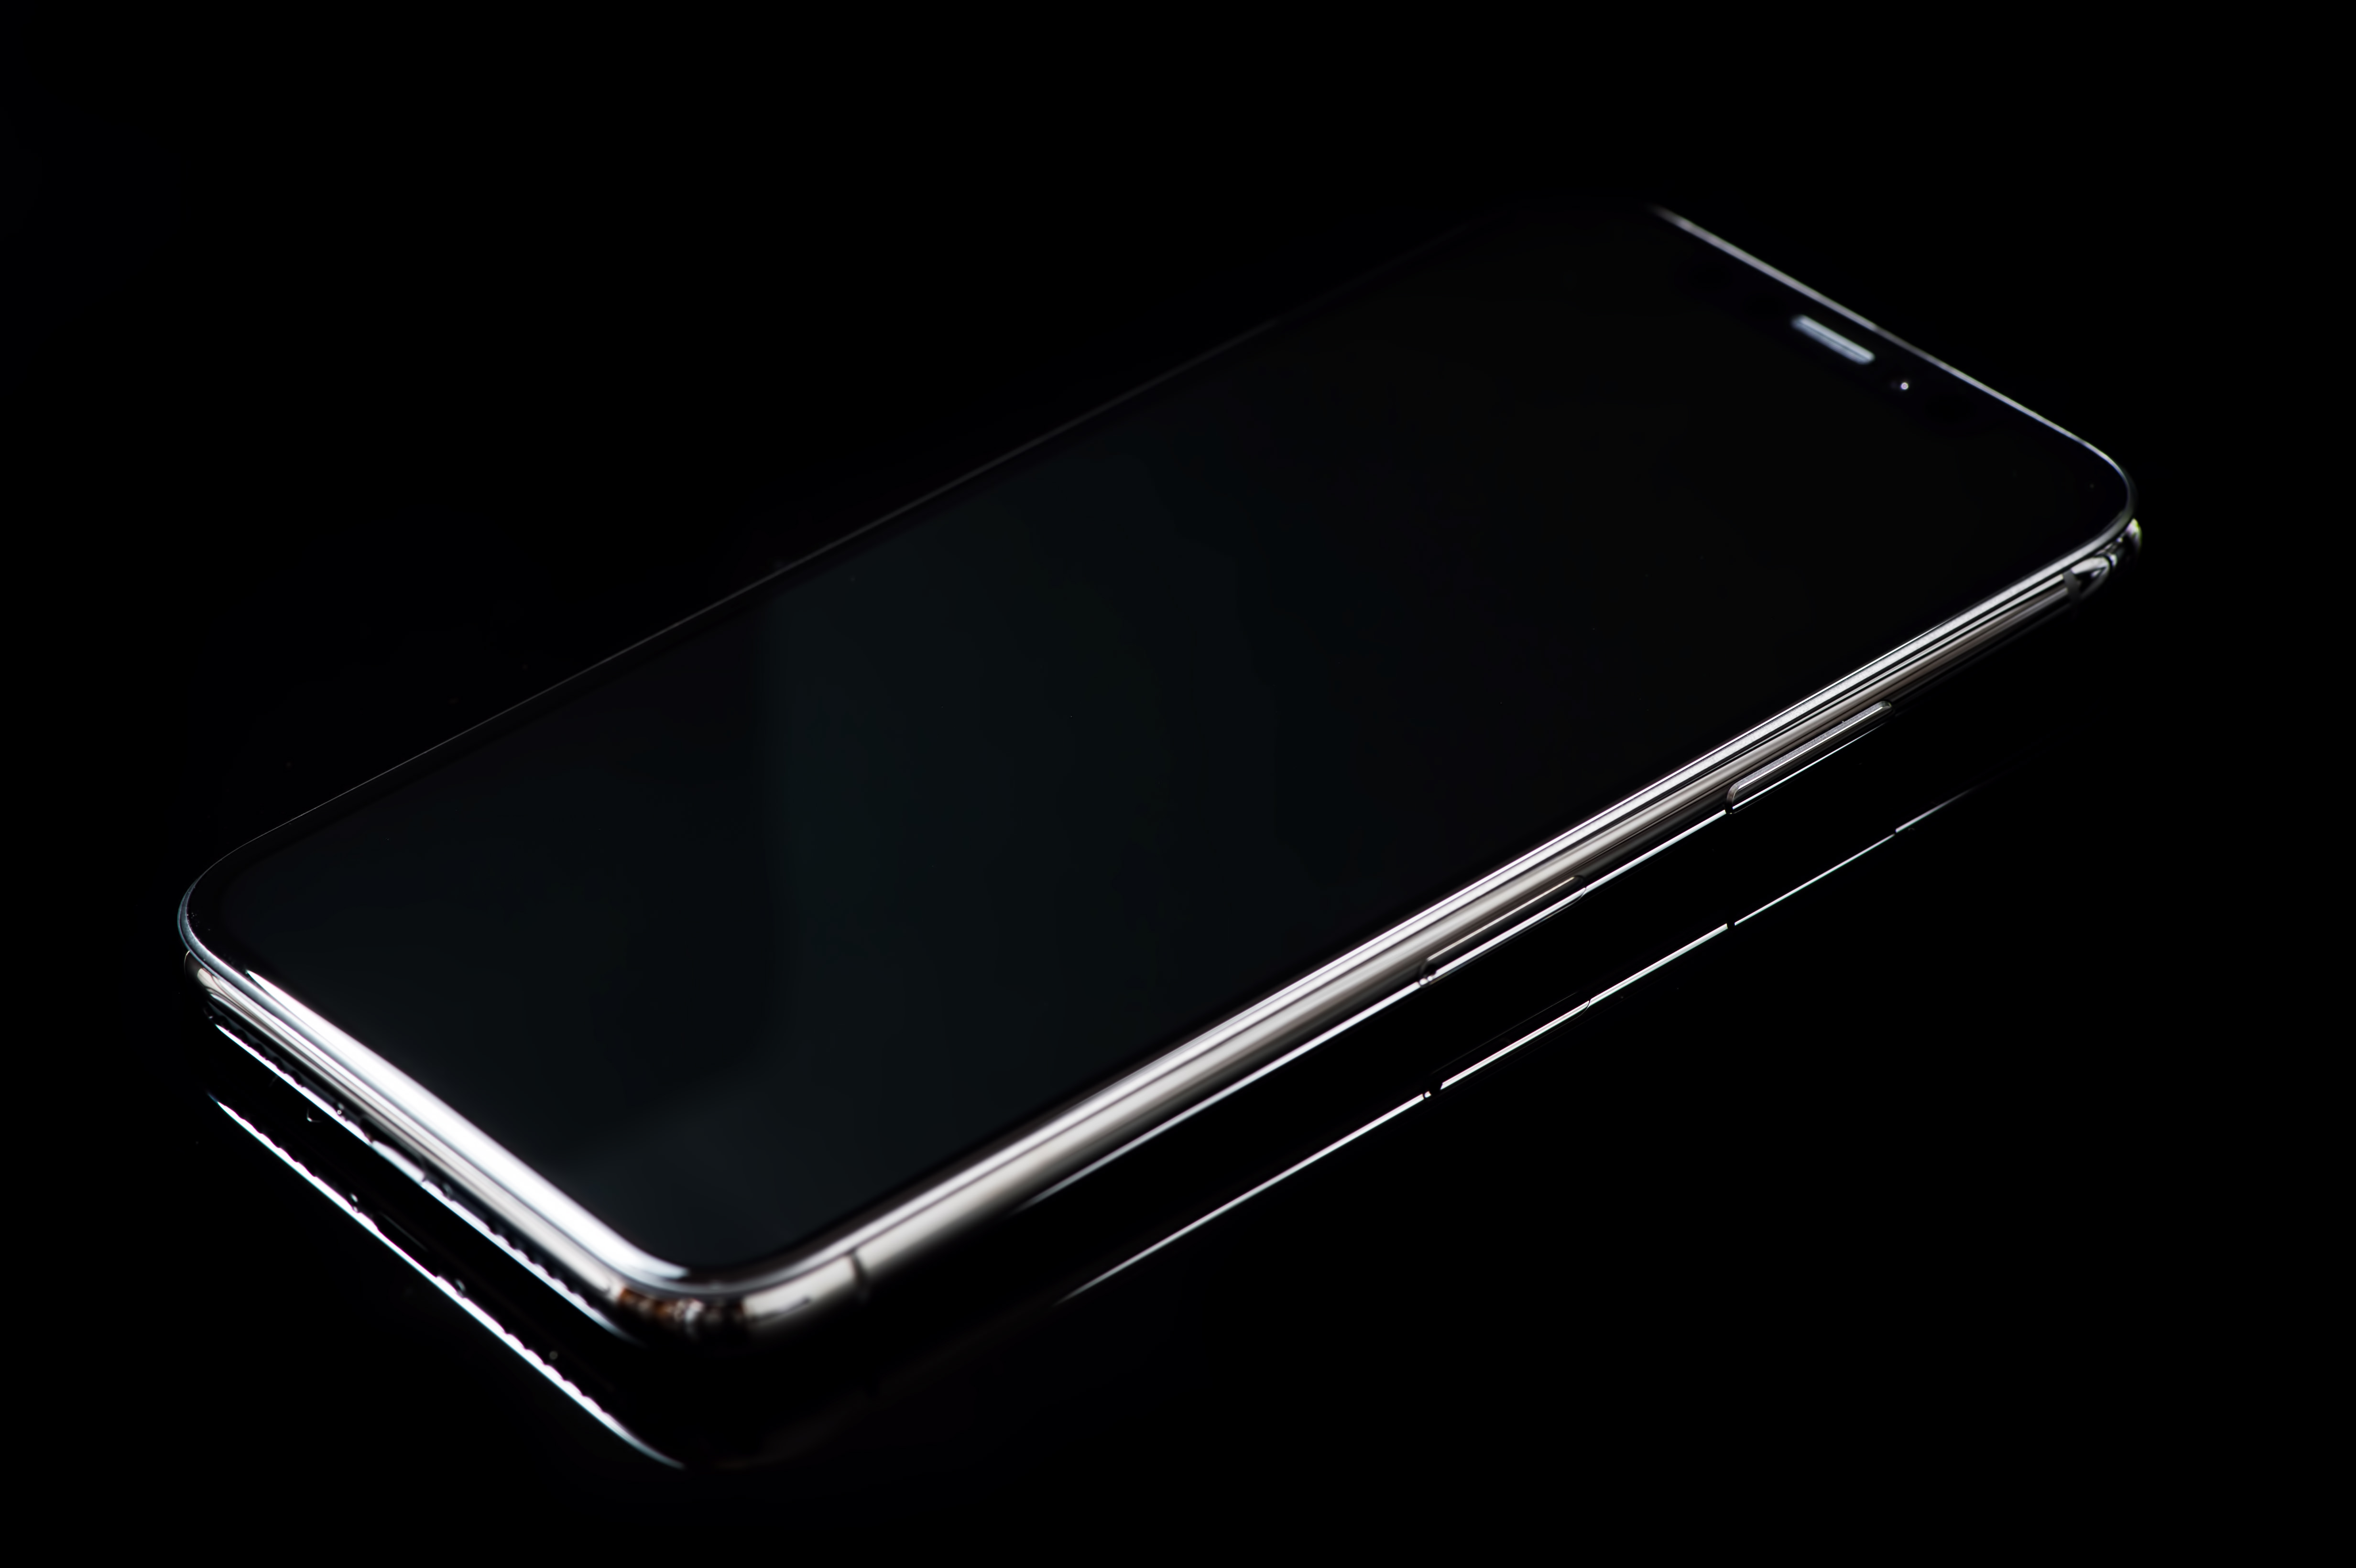 フレーム枠が美しい Iphone X スペースグレイの写真を無料ダウンロード フリー素材 ぱくたそ